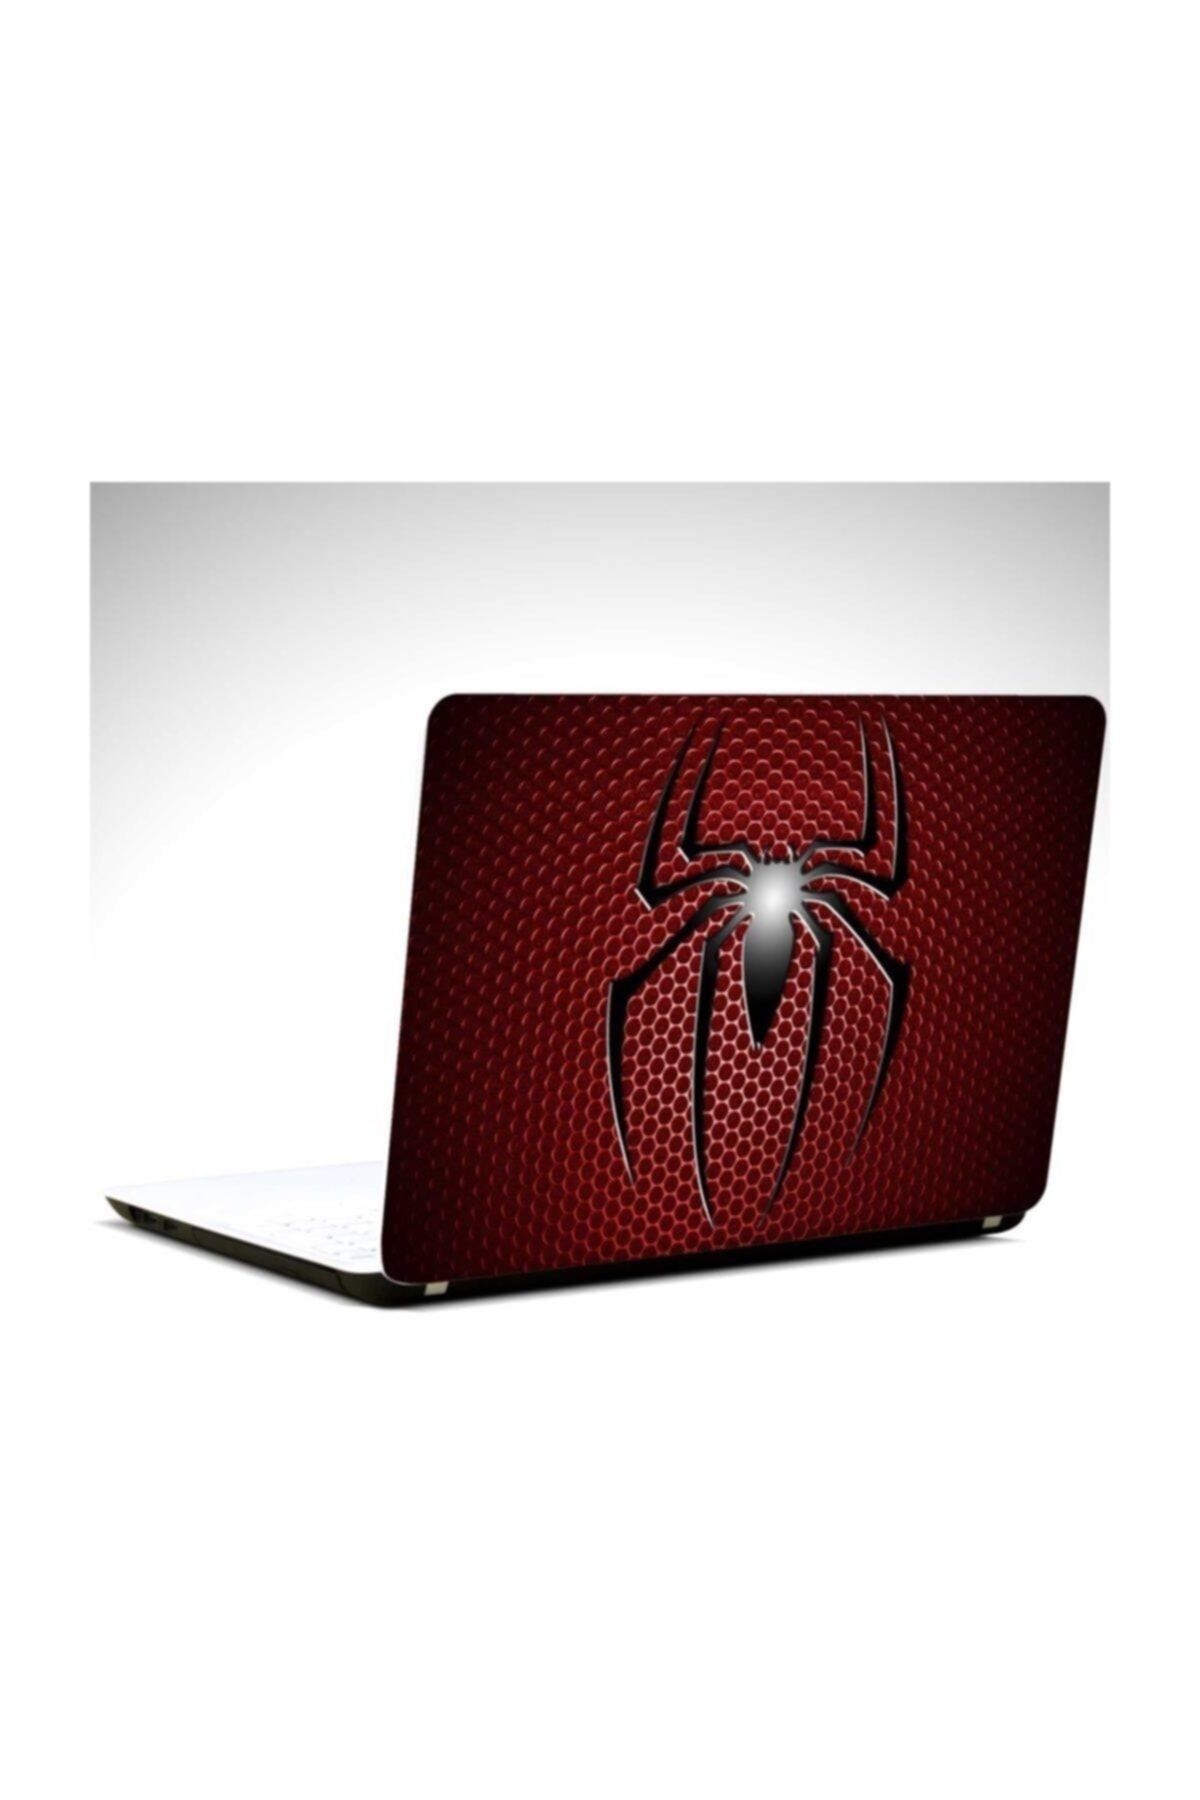 KT Decor Spider Laptop Sticker